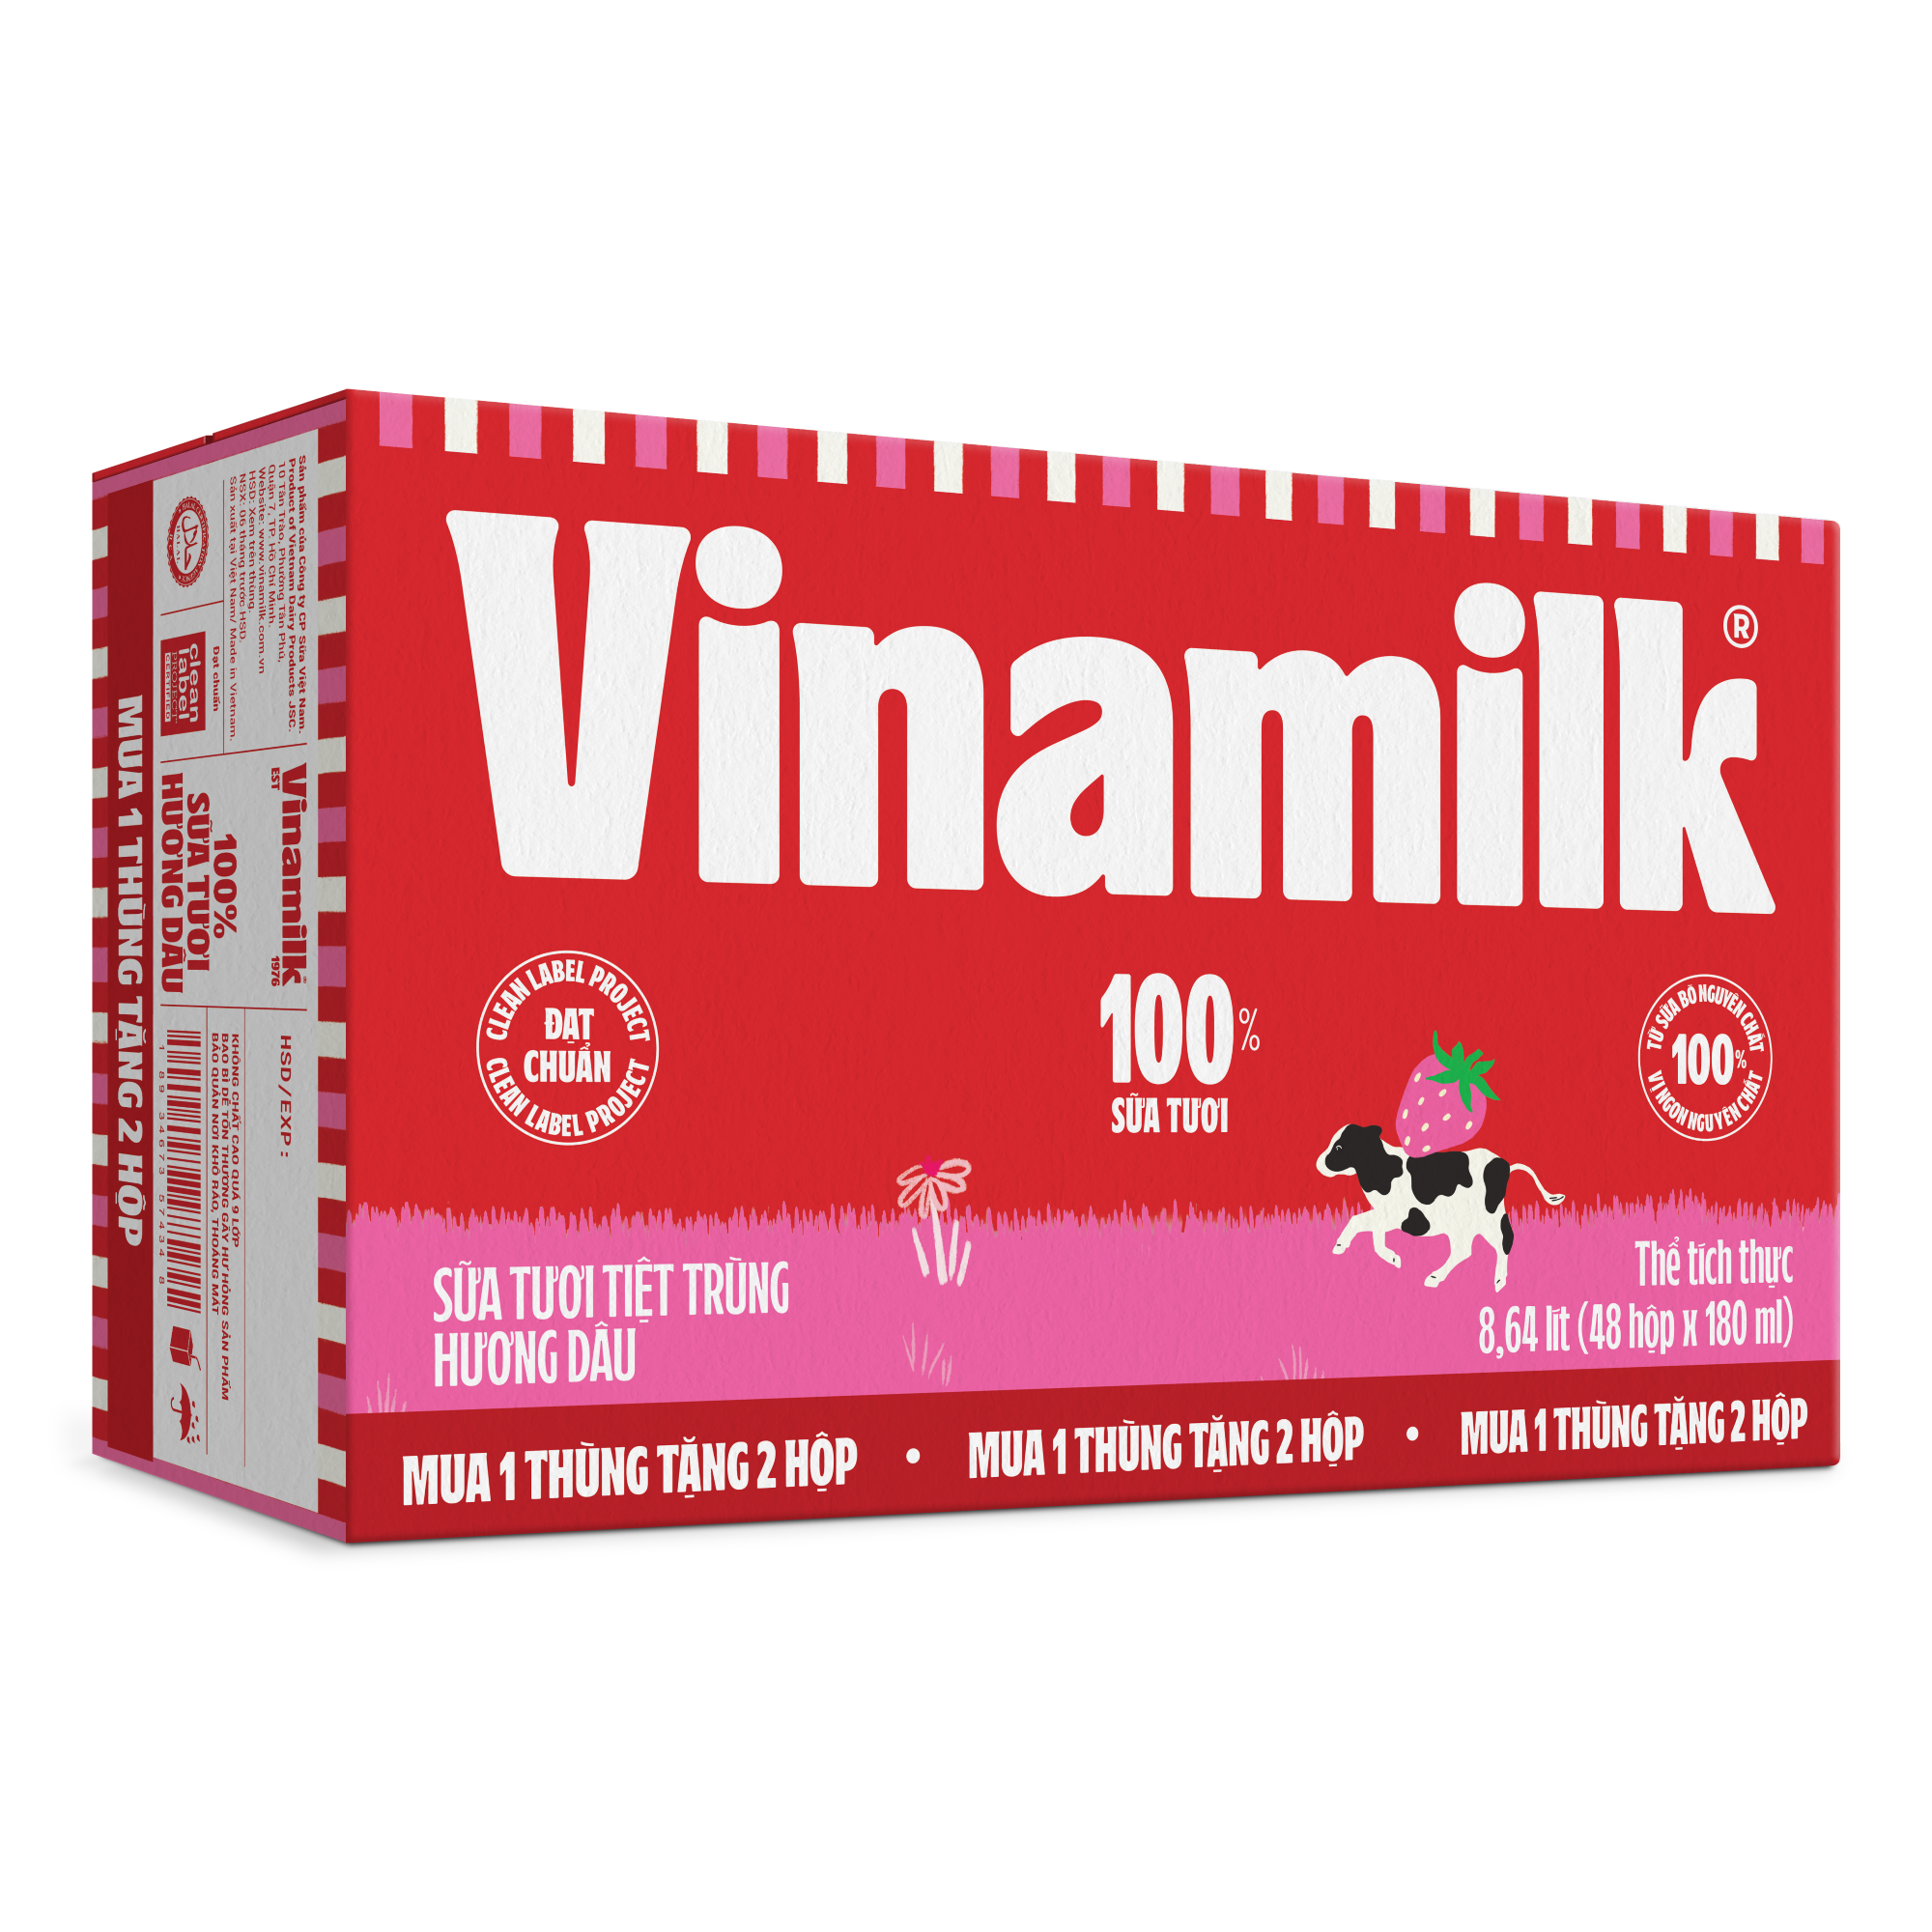 [TẶNG 2 HỘP] Thùng 48 Hộp Sữa tươi tiệt trùng Vinamilk 100% Hương Dâu 180ml - Tặng thêm 2 hộp